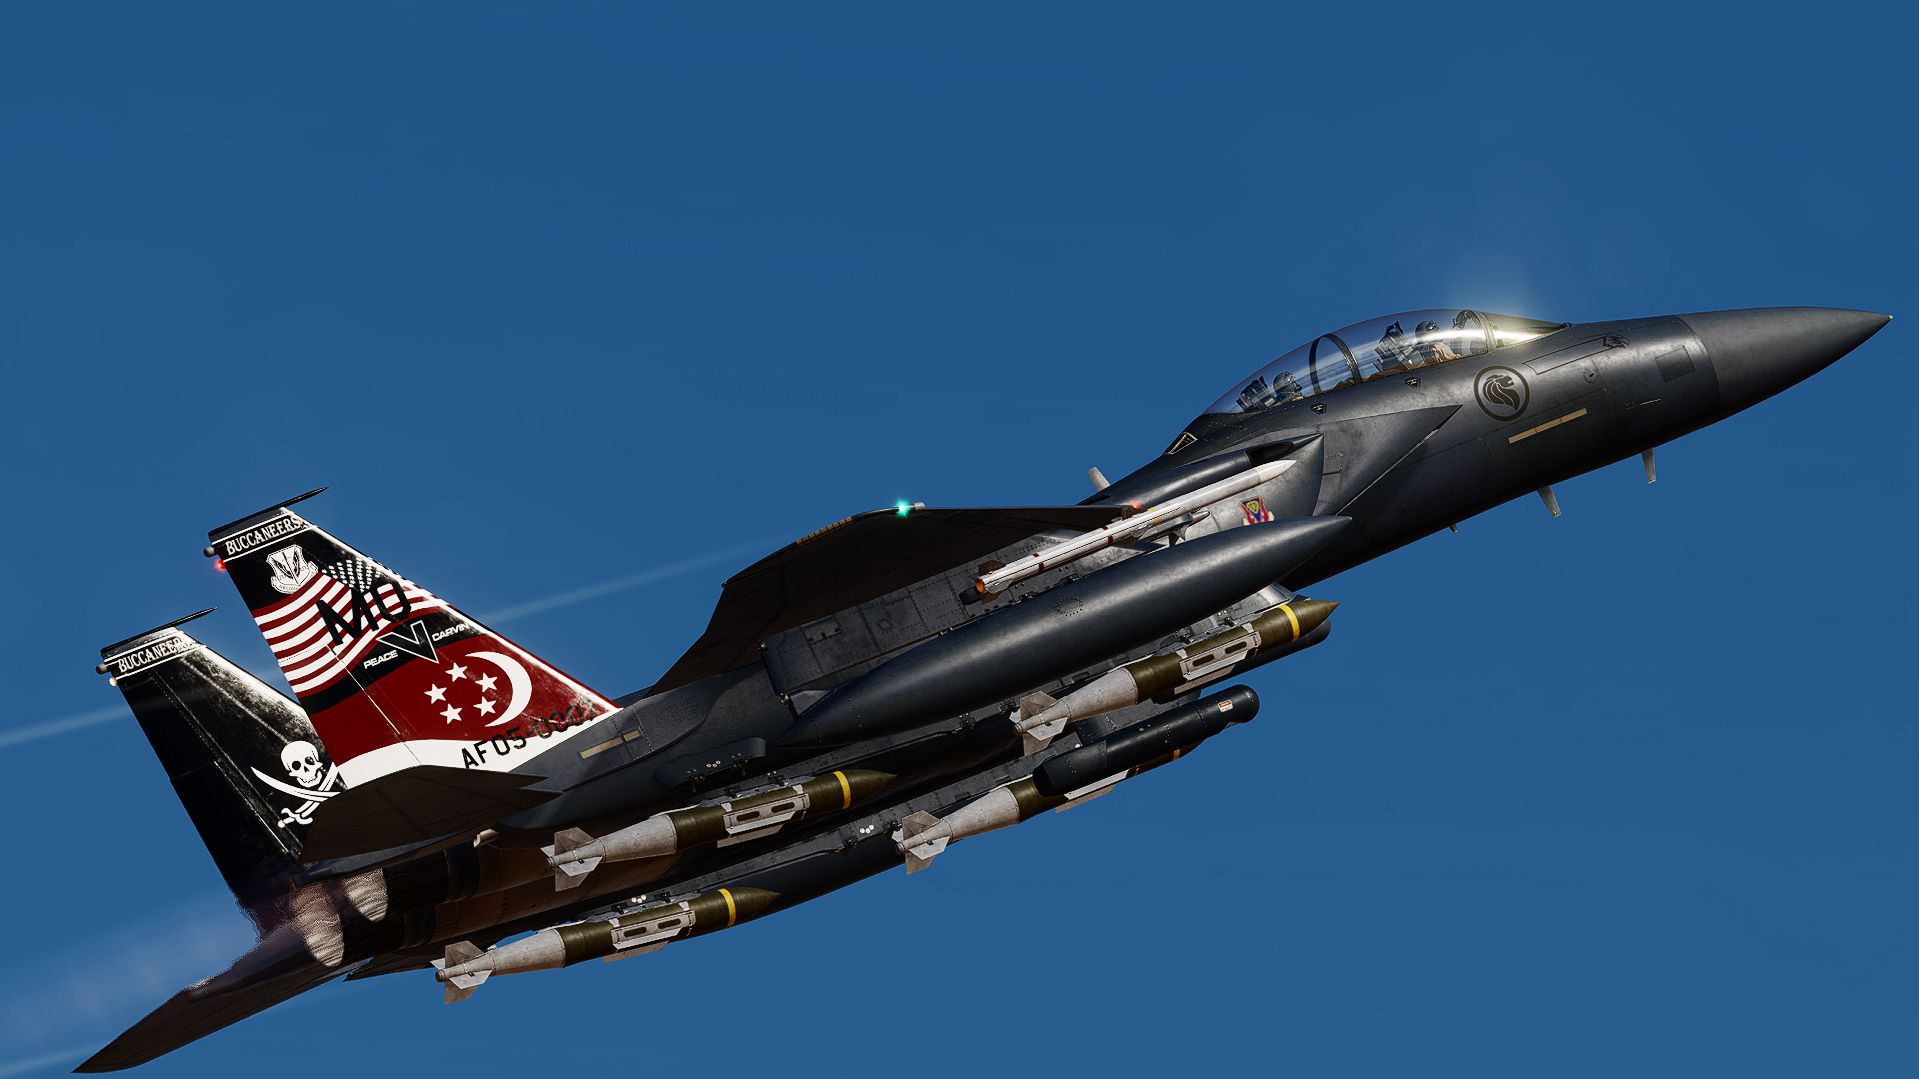 F-15E strike eagle MO 05-0007 "Peace" (REWORKED)